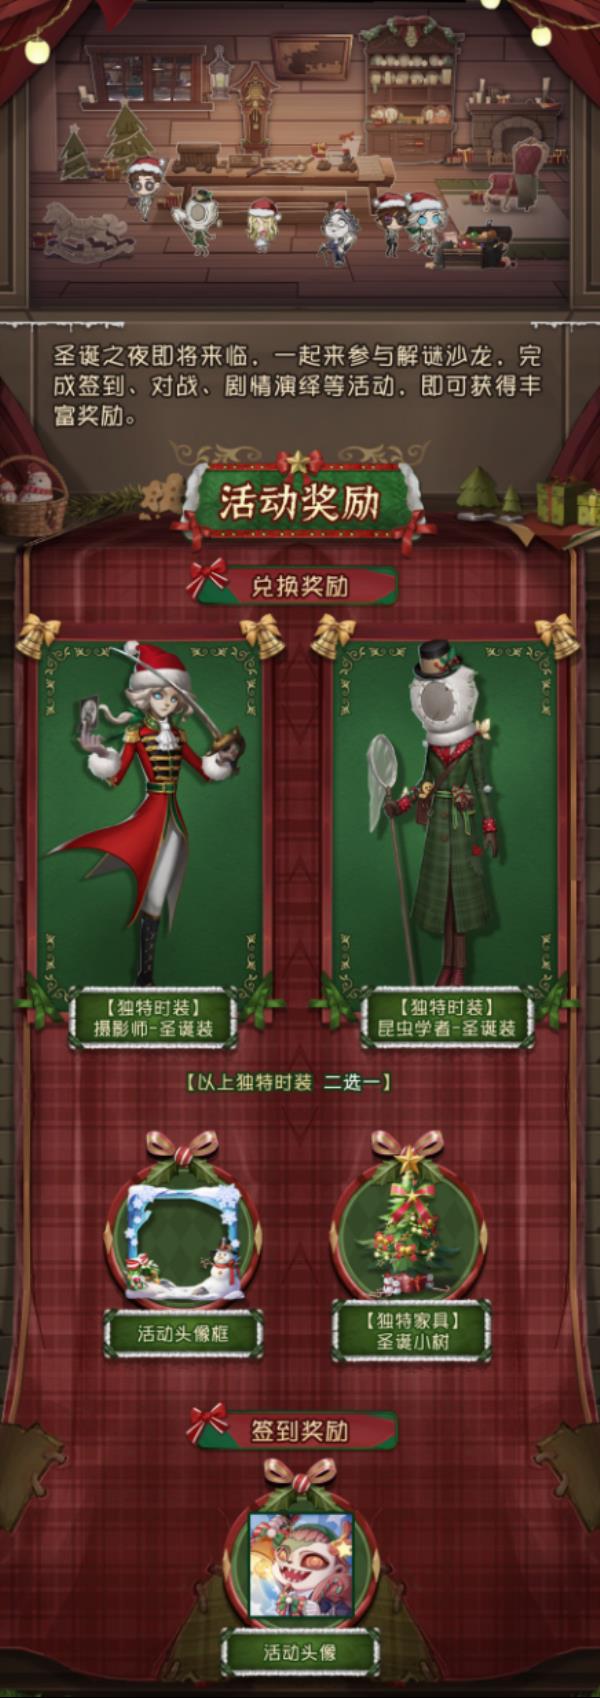 姜饼颂歌 第五人格圣诞节活动爆料来袭！